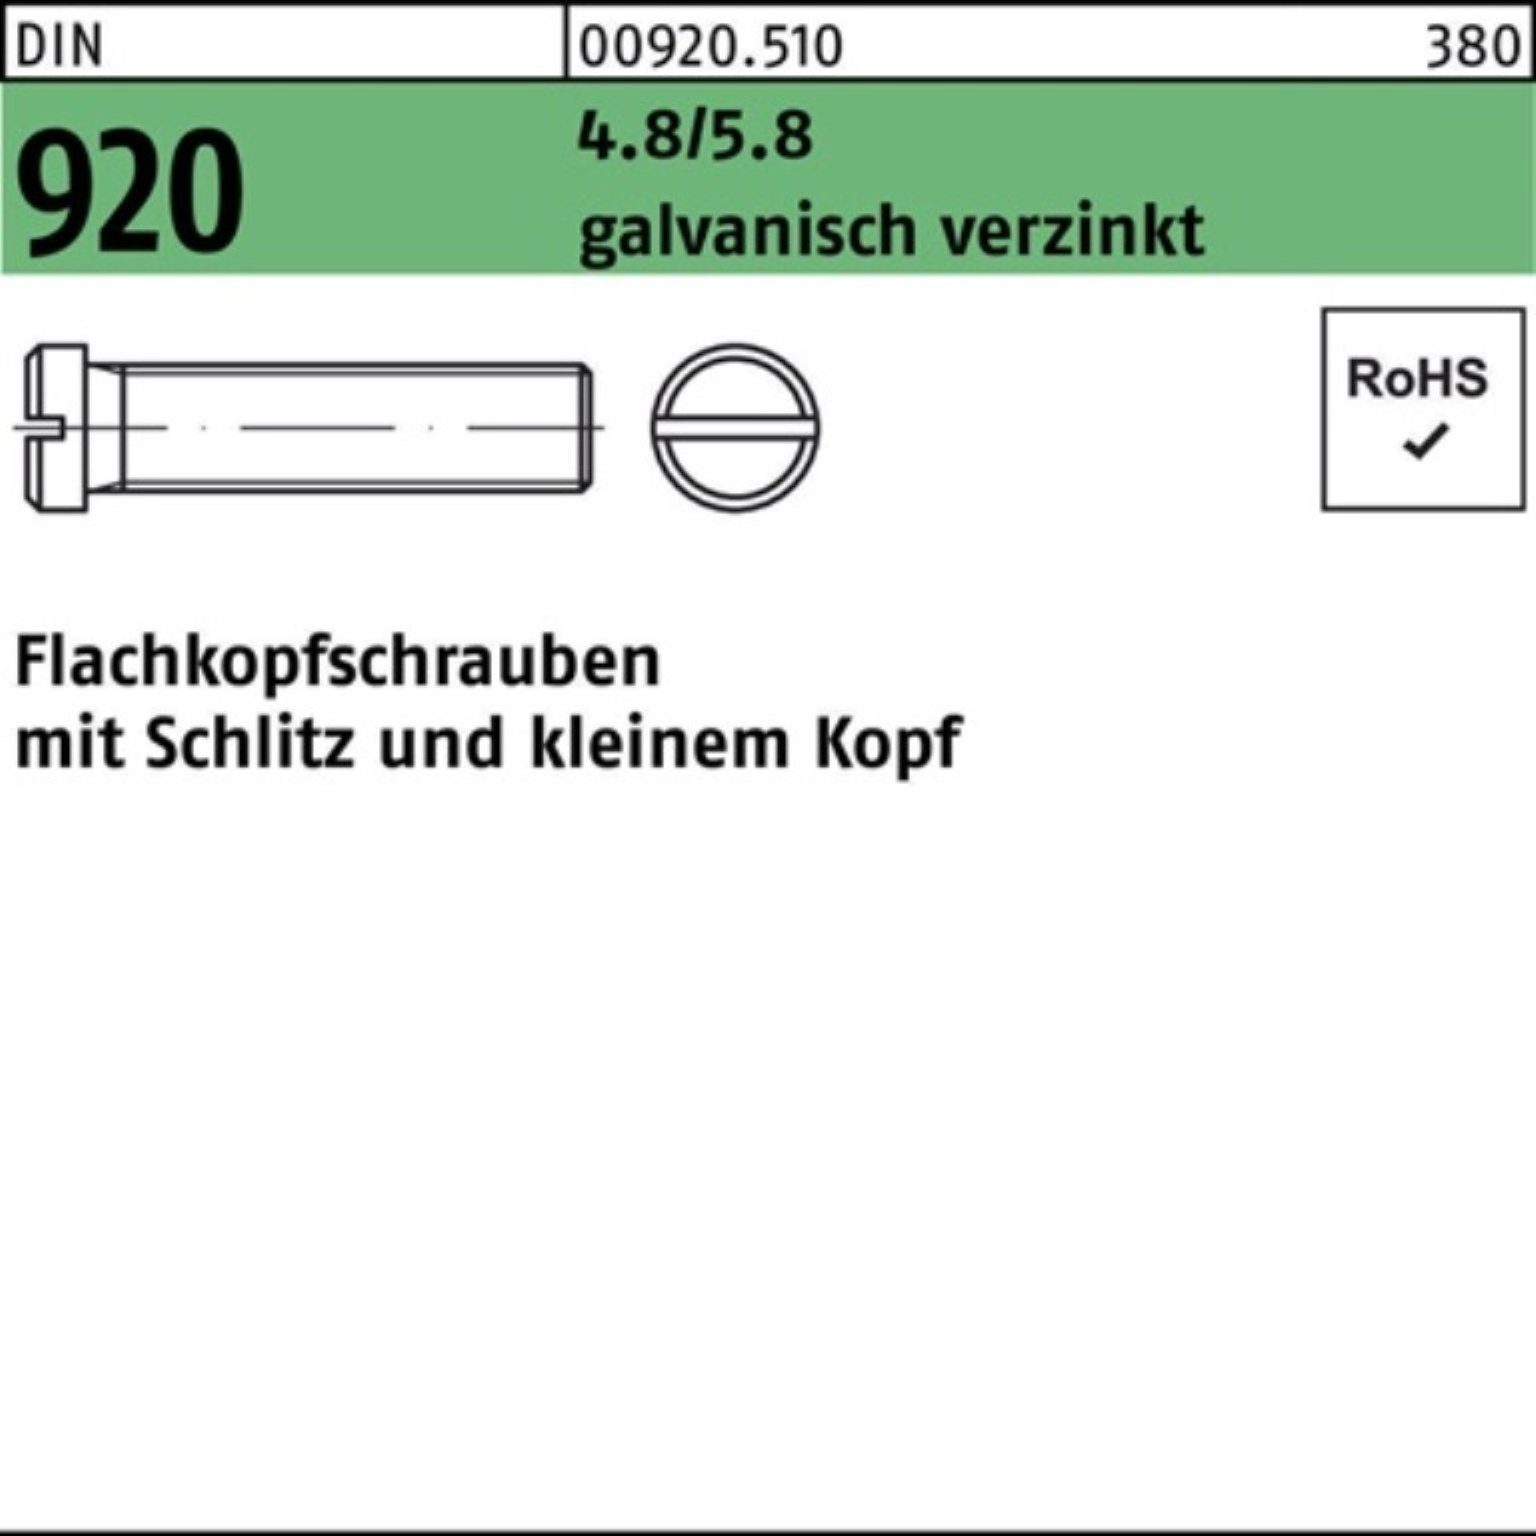 Reyher Schraube 100er Pack Flachkopfschraube DIN 920 Schlitz M4x 6 4.8/5.8 galv.verz.